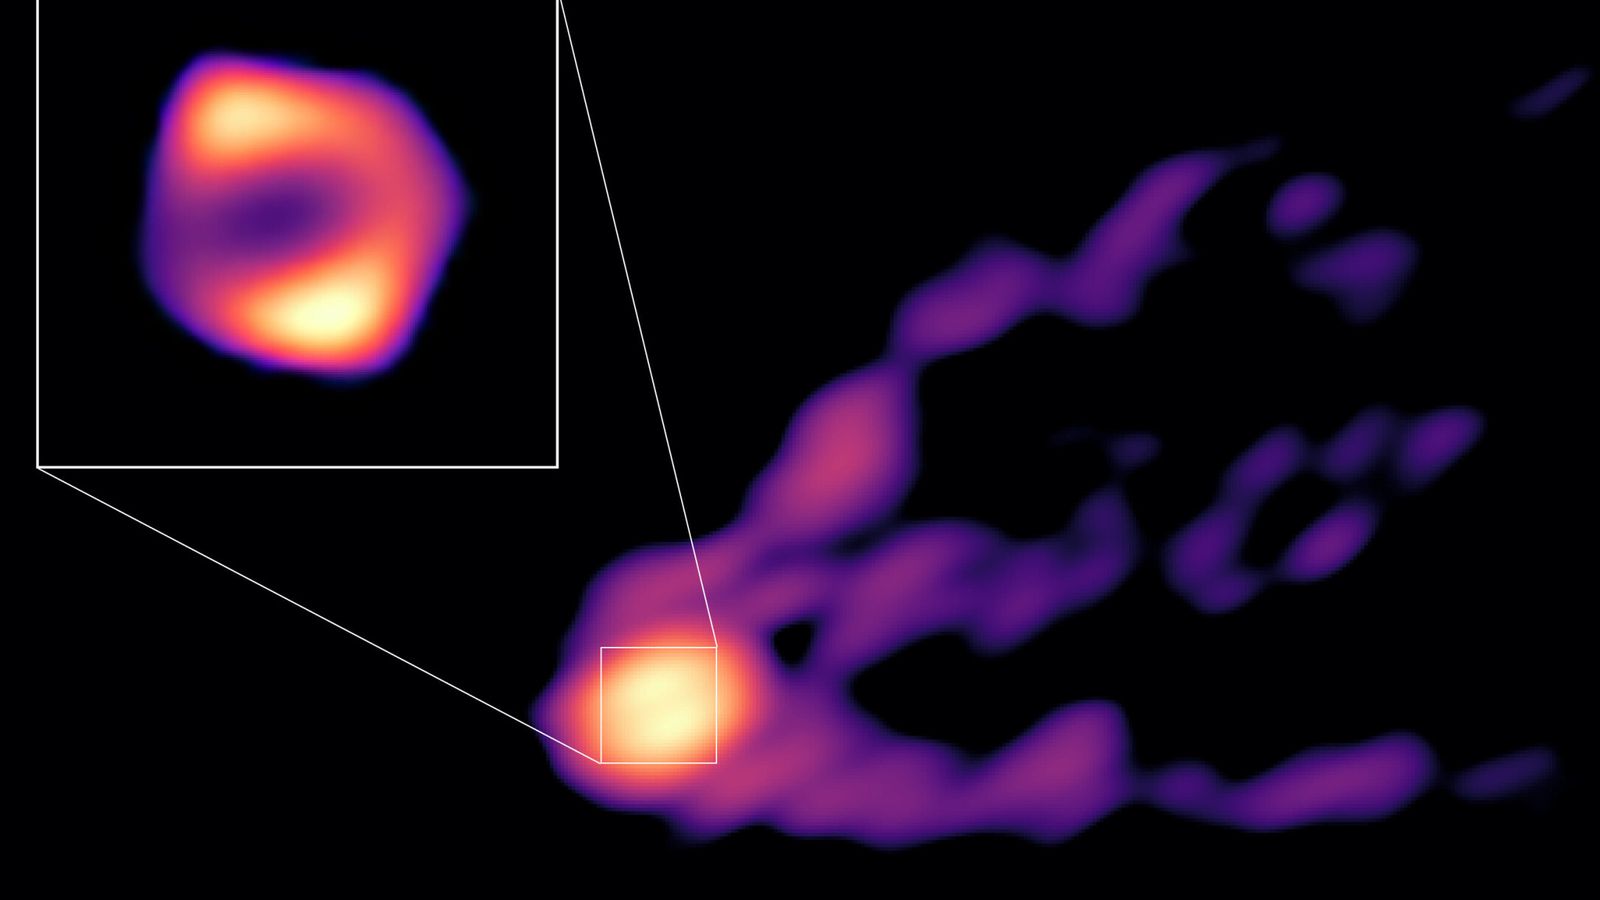 ثقب أسود هائل يطلق طائرة غامضة في الصورة الأولى للحدث التي يلتقطها علماء الفلك |  أخبار العلوم والتكنولوجيا